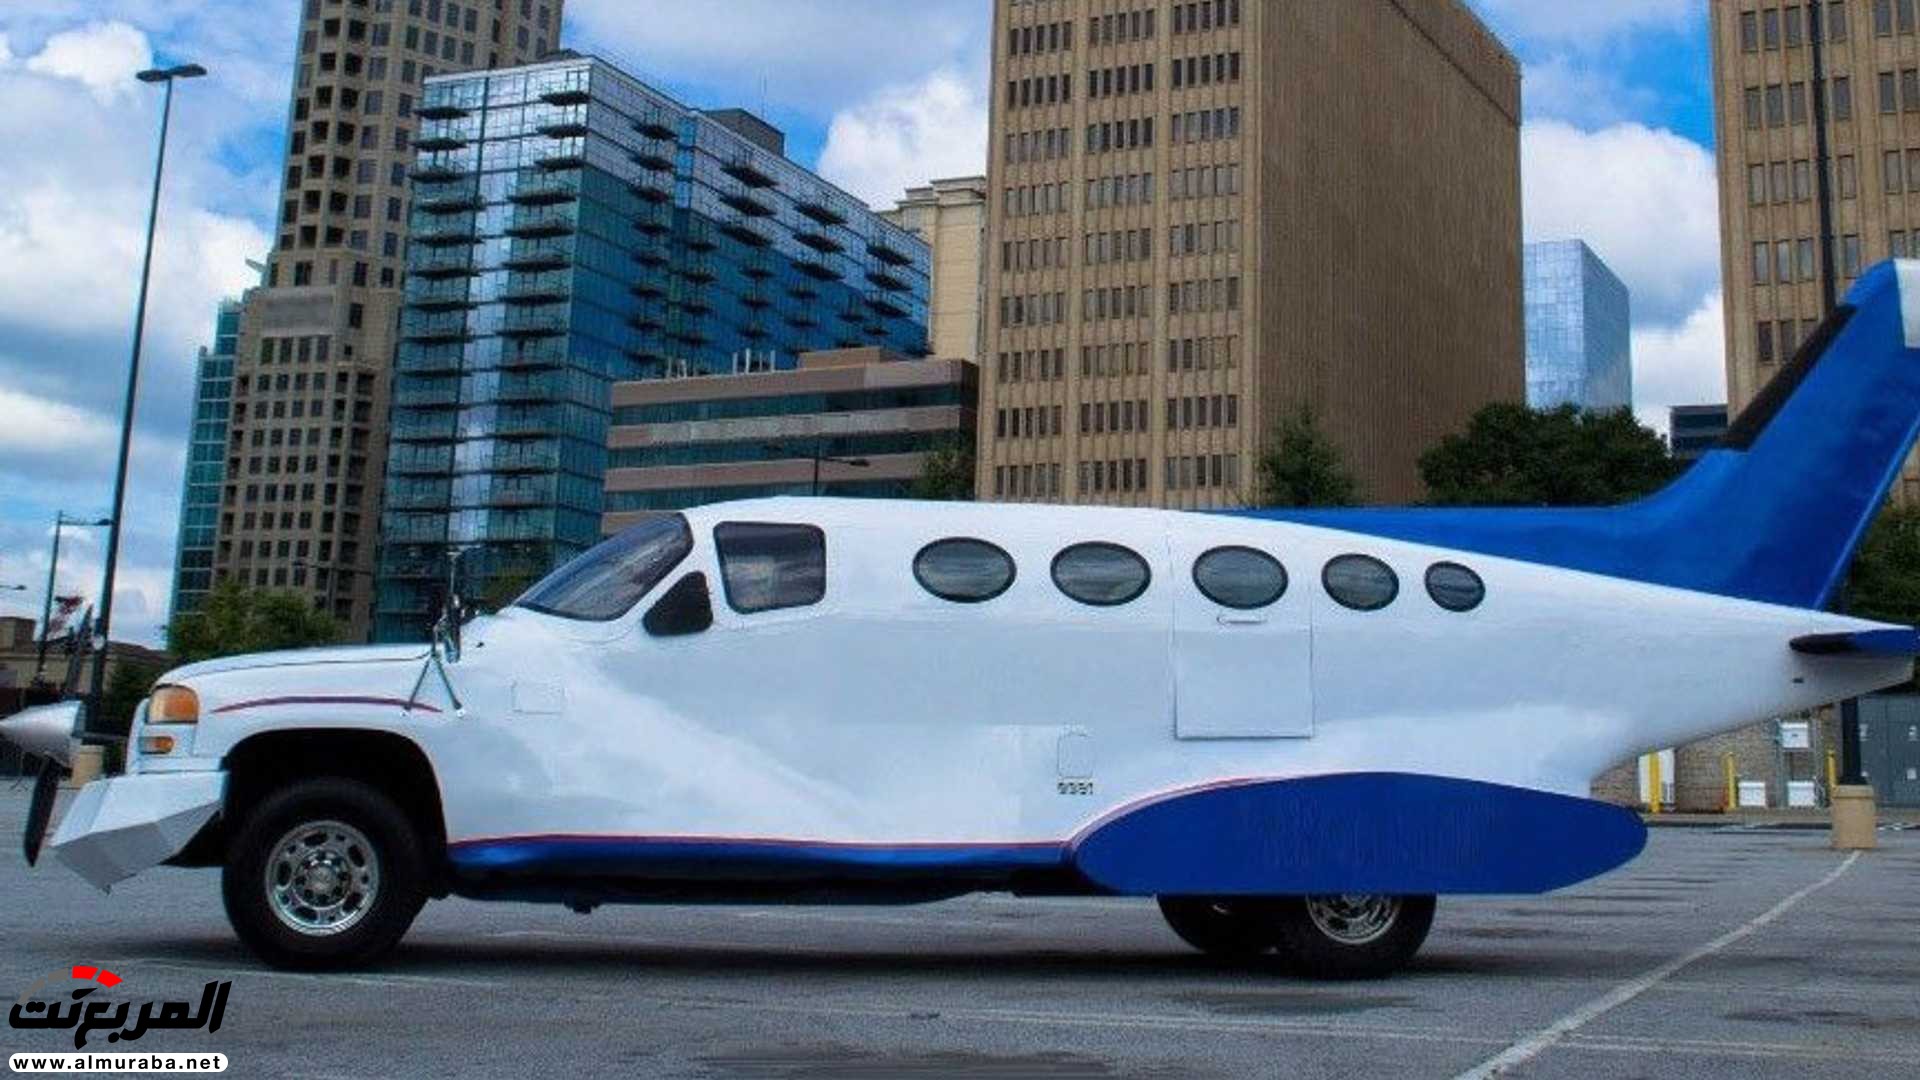 "بالفيديو والصور" جمس سييرا تتحول إلى طائرة ليموزين 2